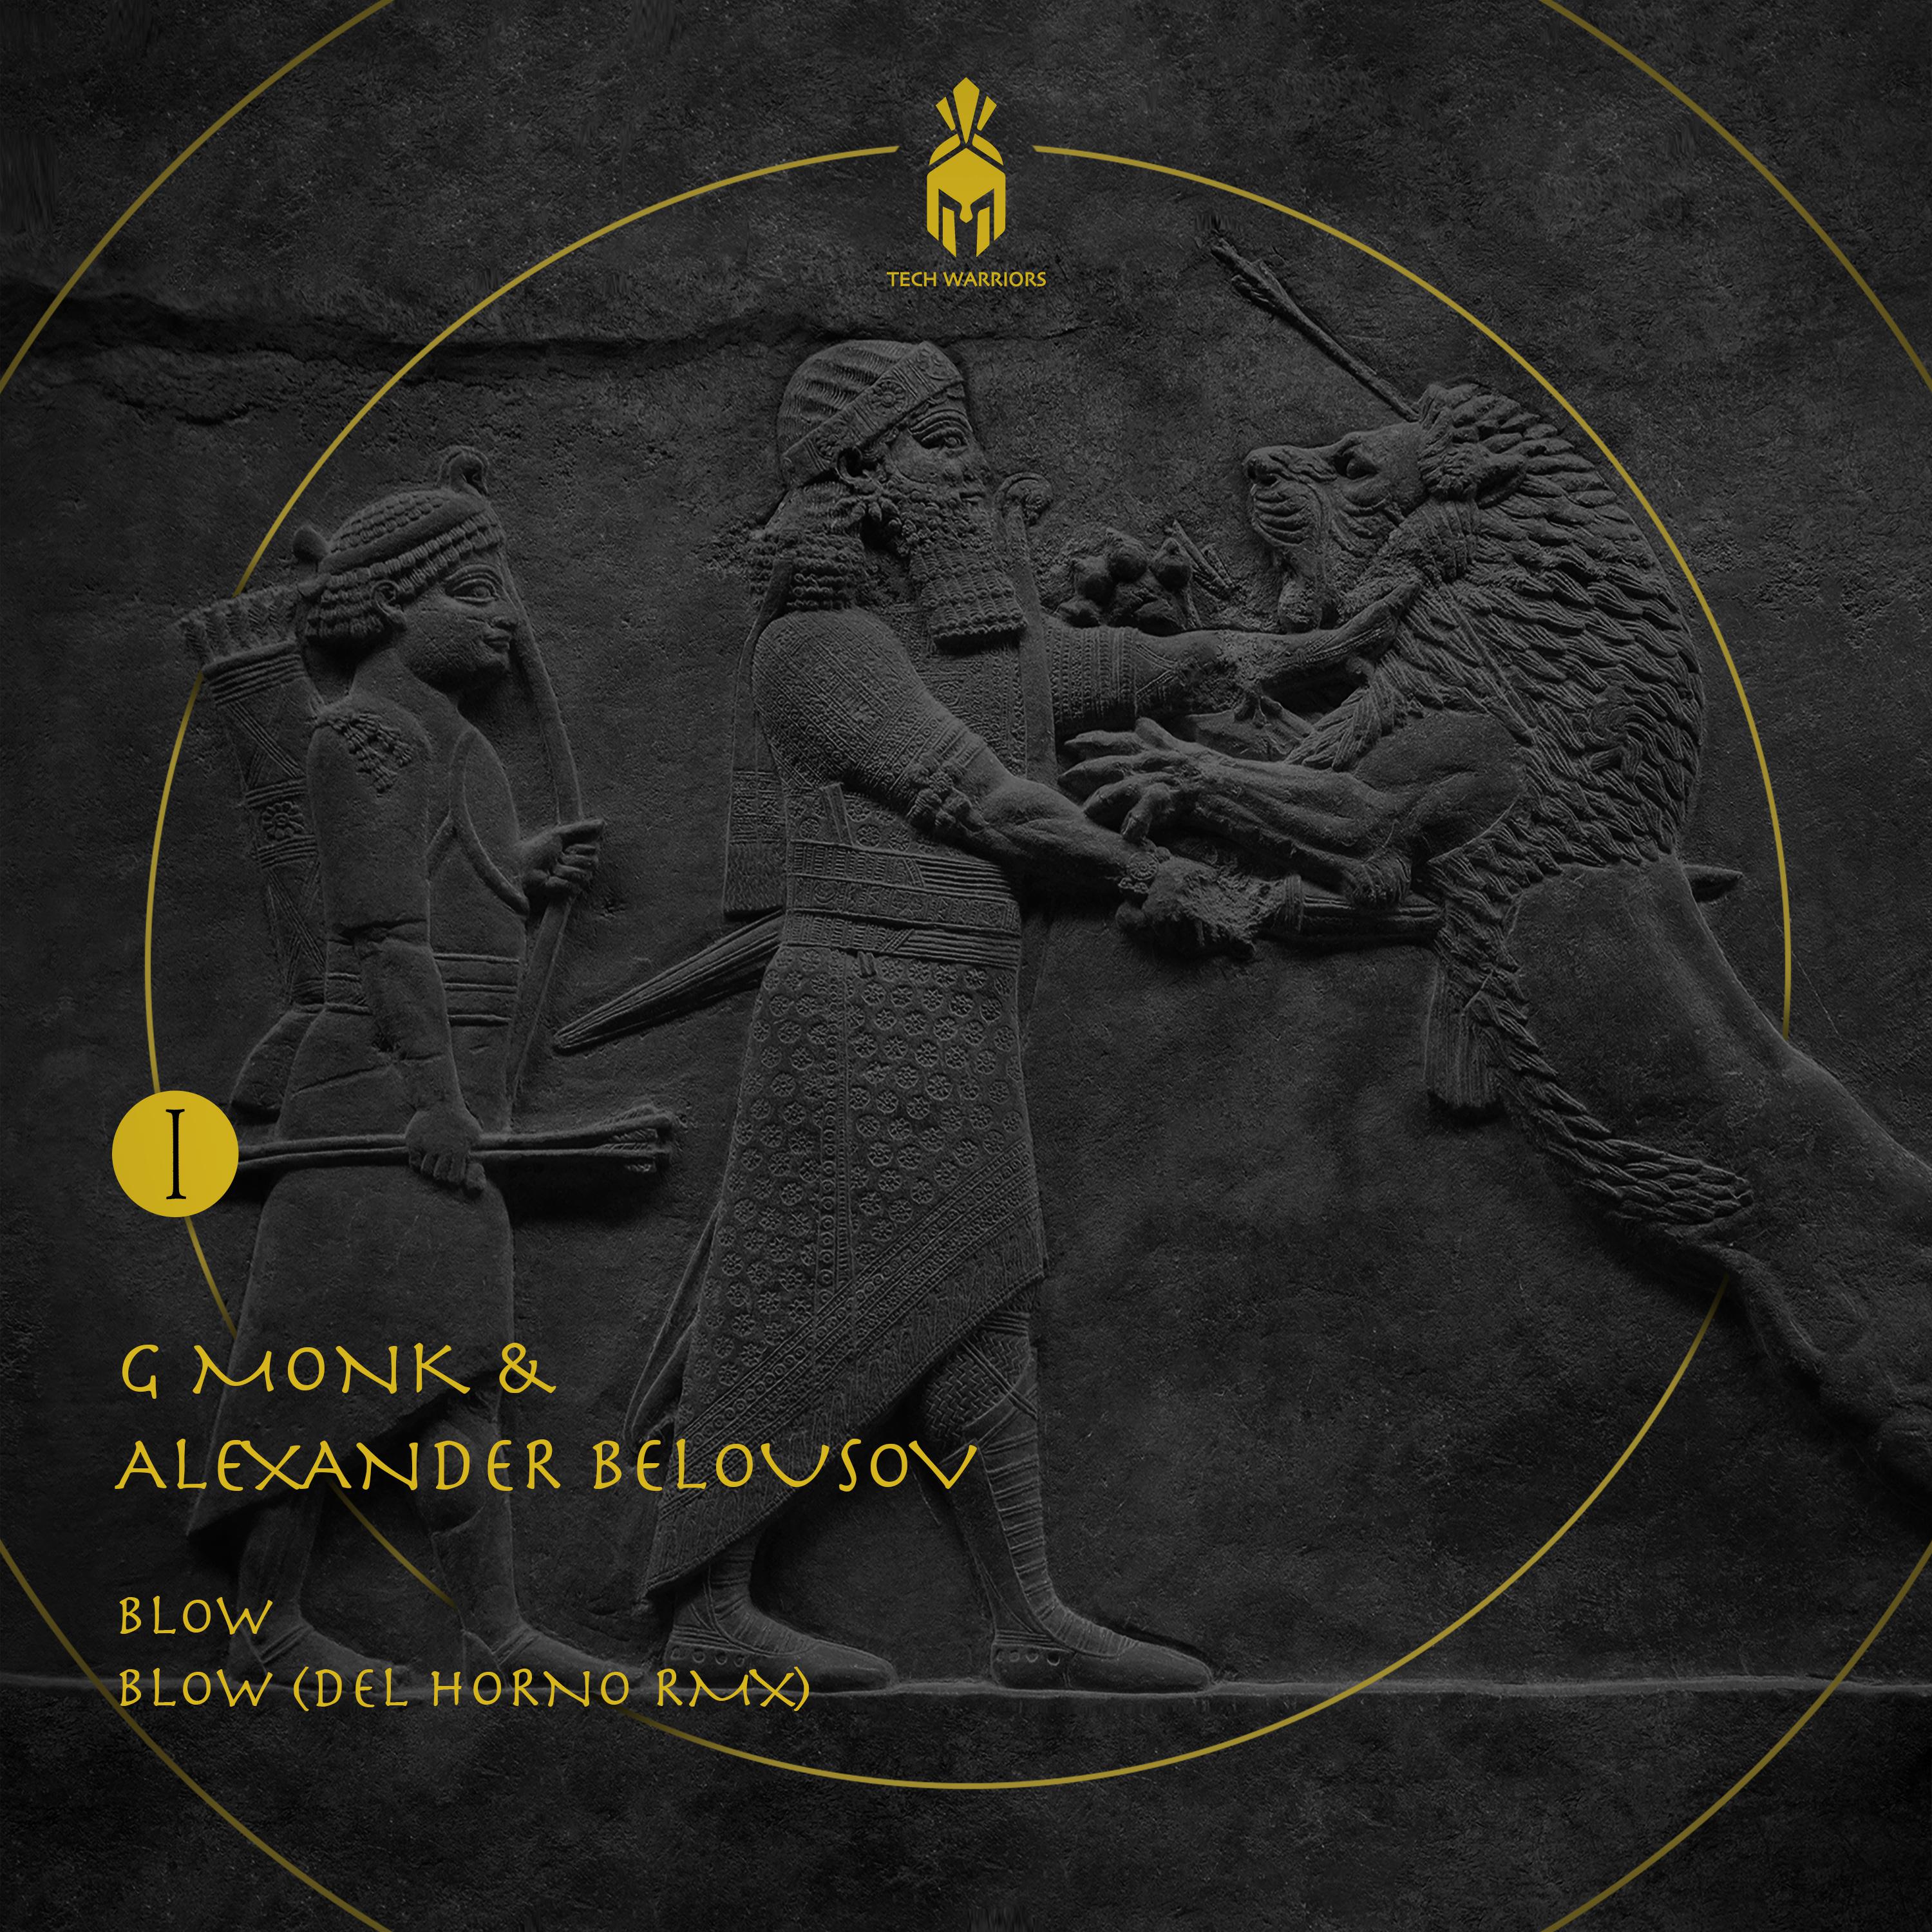 Alexander Belousov - Blow (Del Horno Remix)